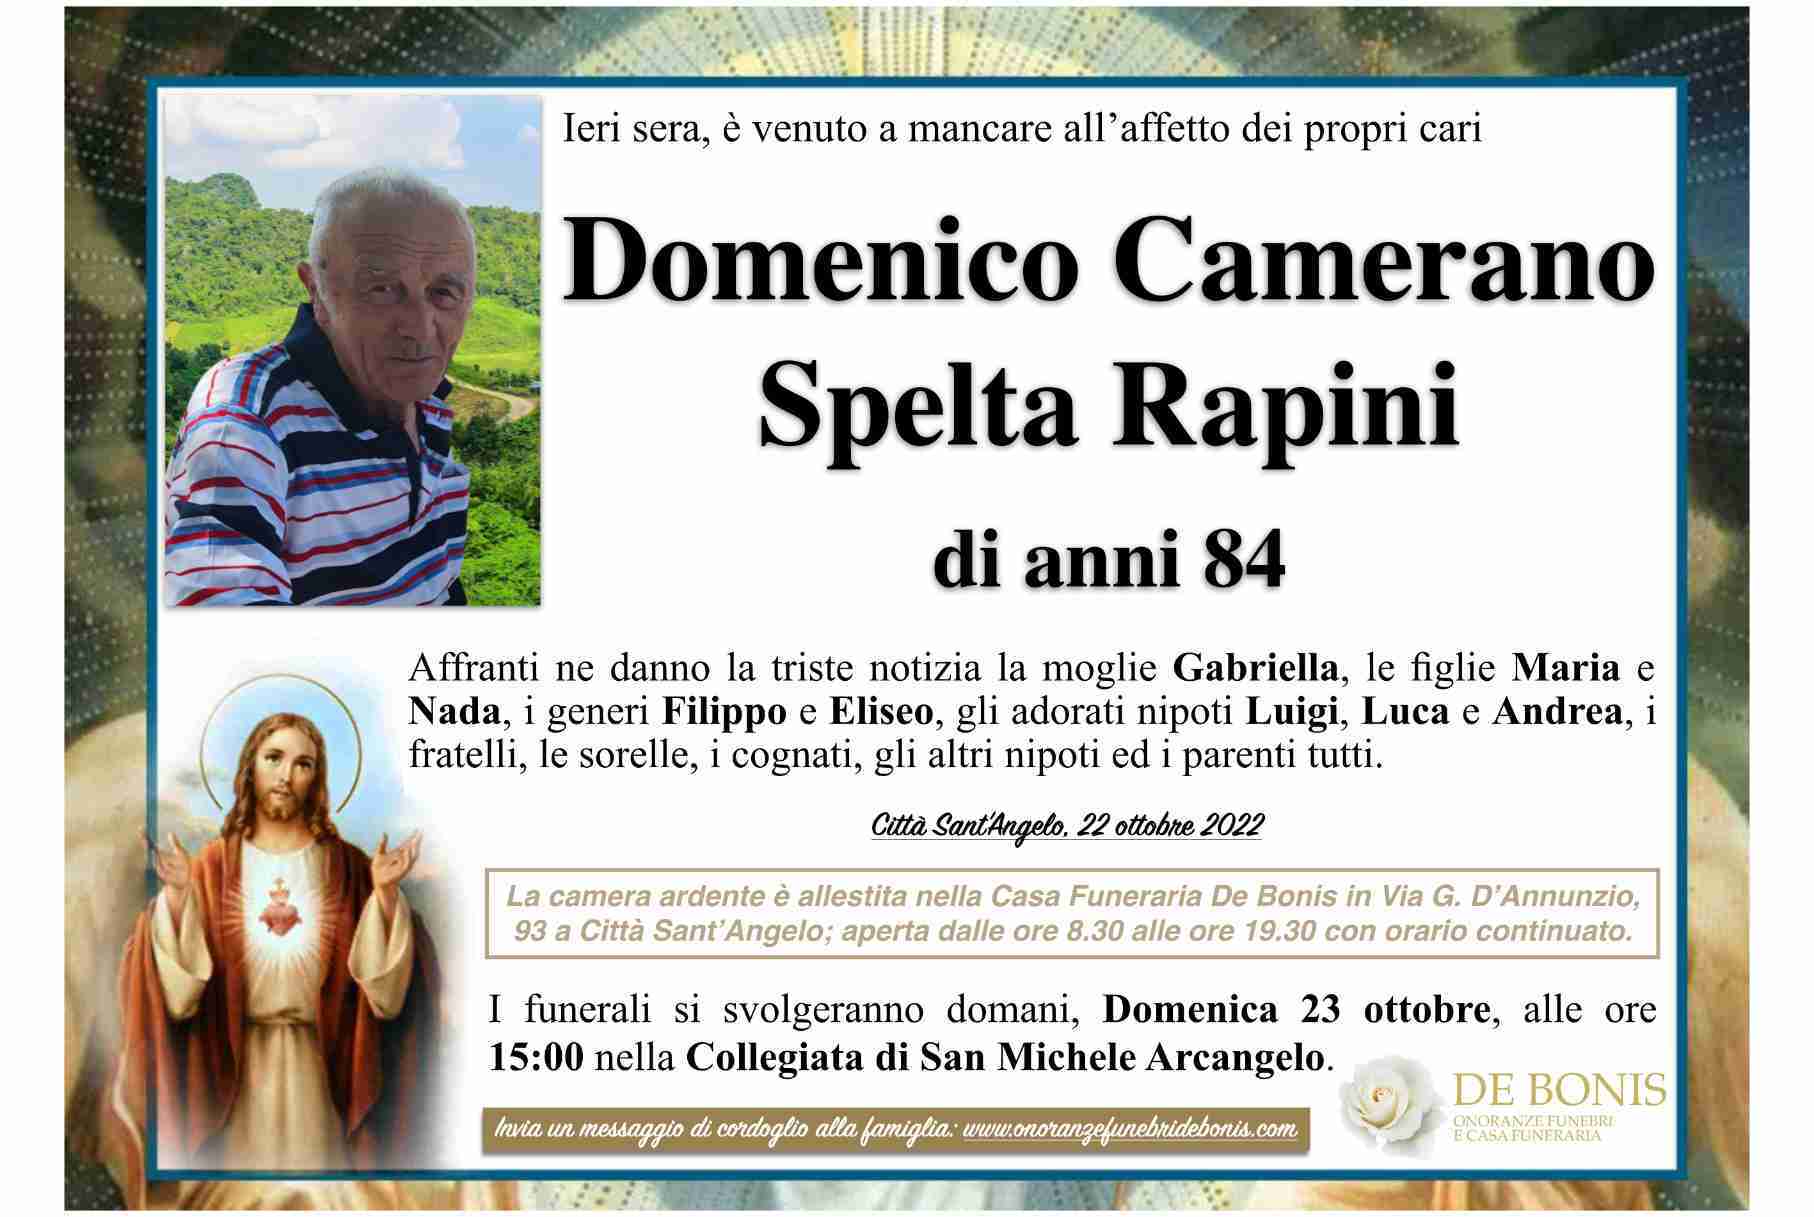 Domenico Camerano Spelta Rapini